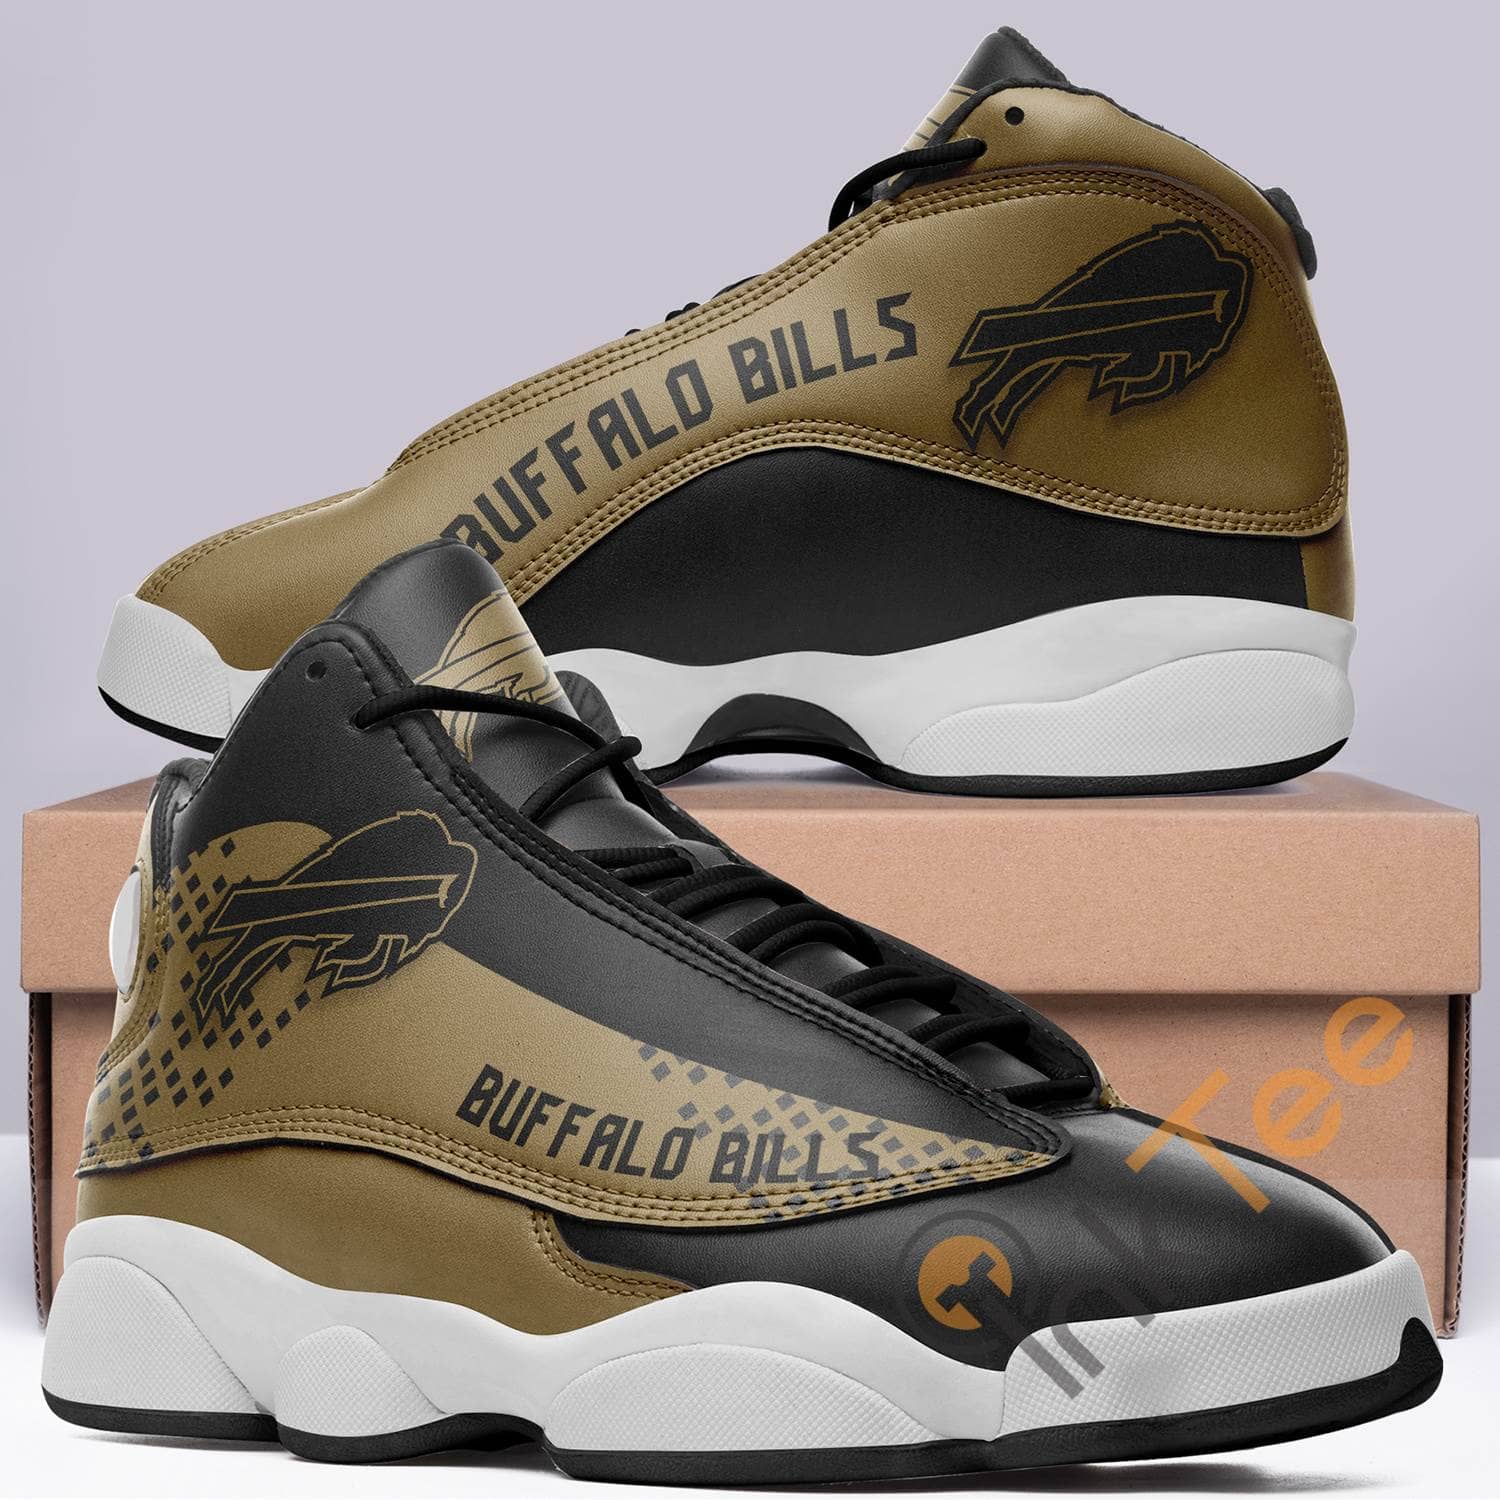 Buffalo Bills Team Aj13 Air Jordan Shoes